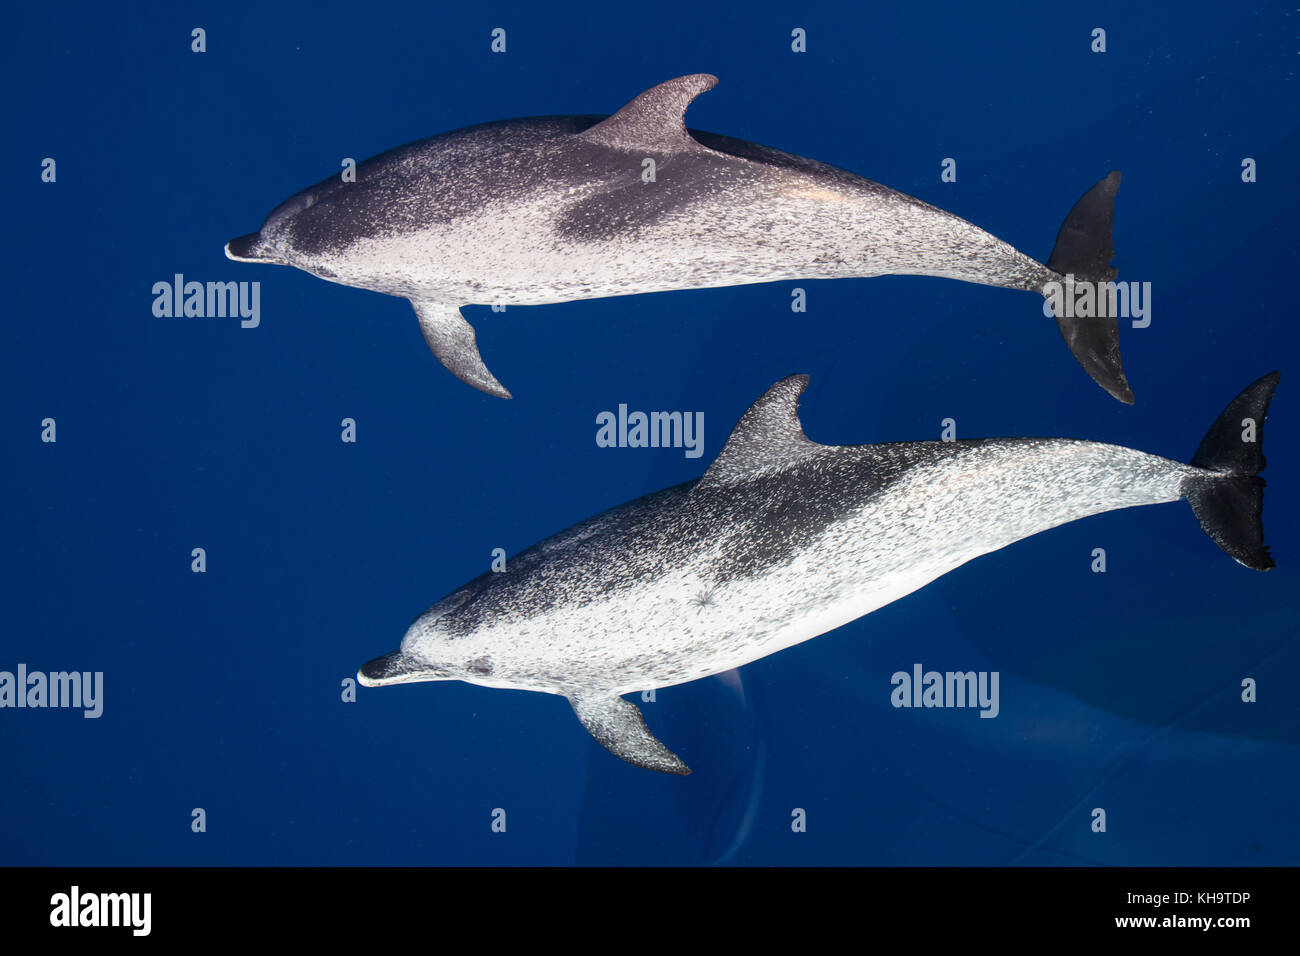 Atlantic delfini maculati vieni a cavalcare la prua del National Geographic Orion vetroso in acqua chiara nel mezzo dell'Oceano Atlantico Foto Stock